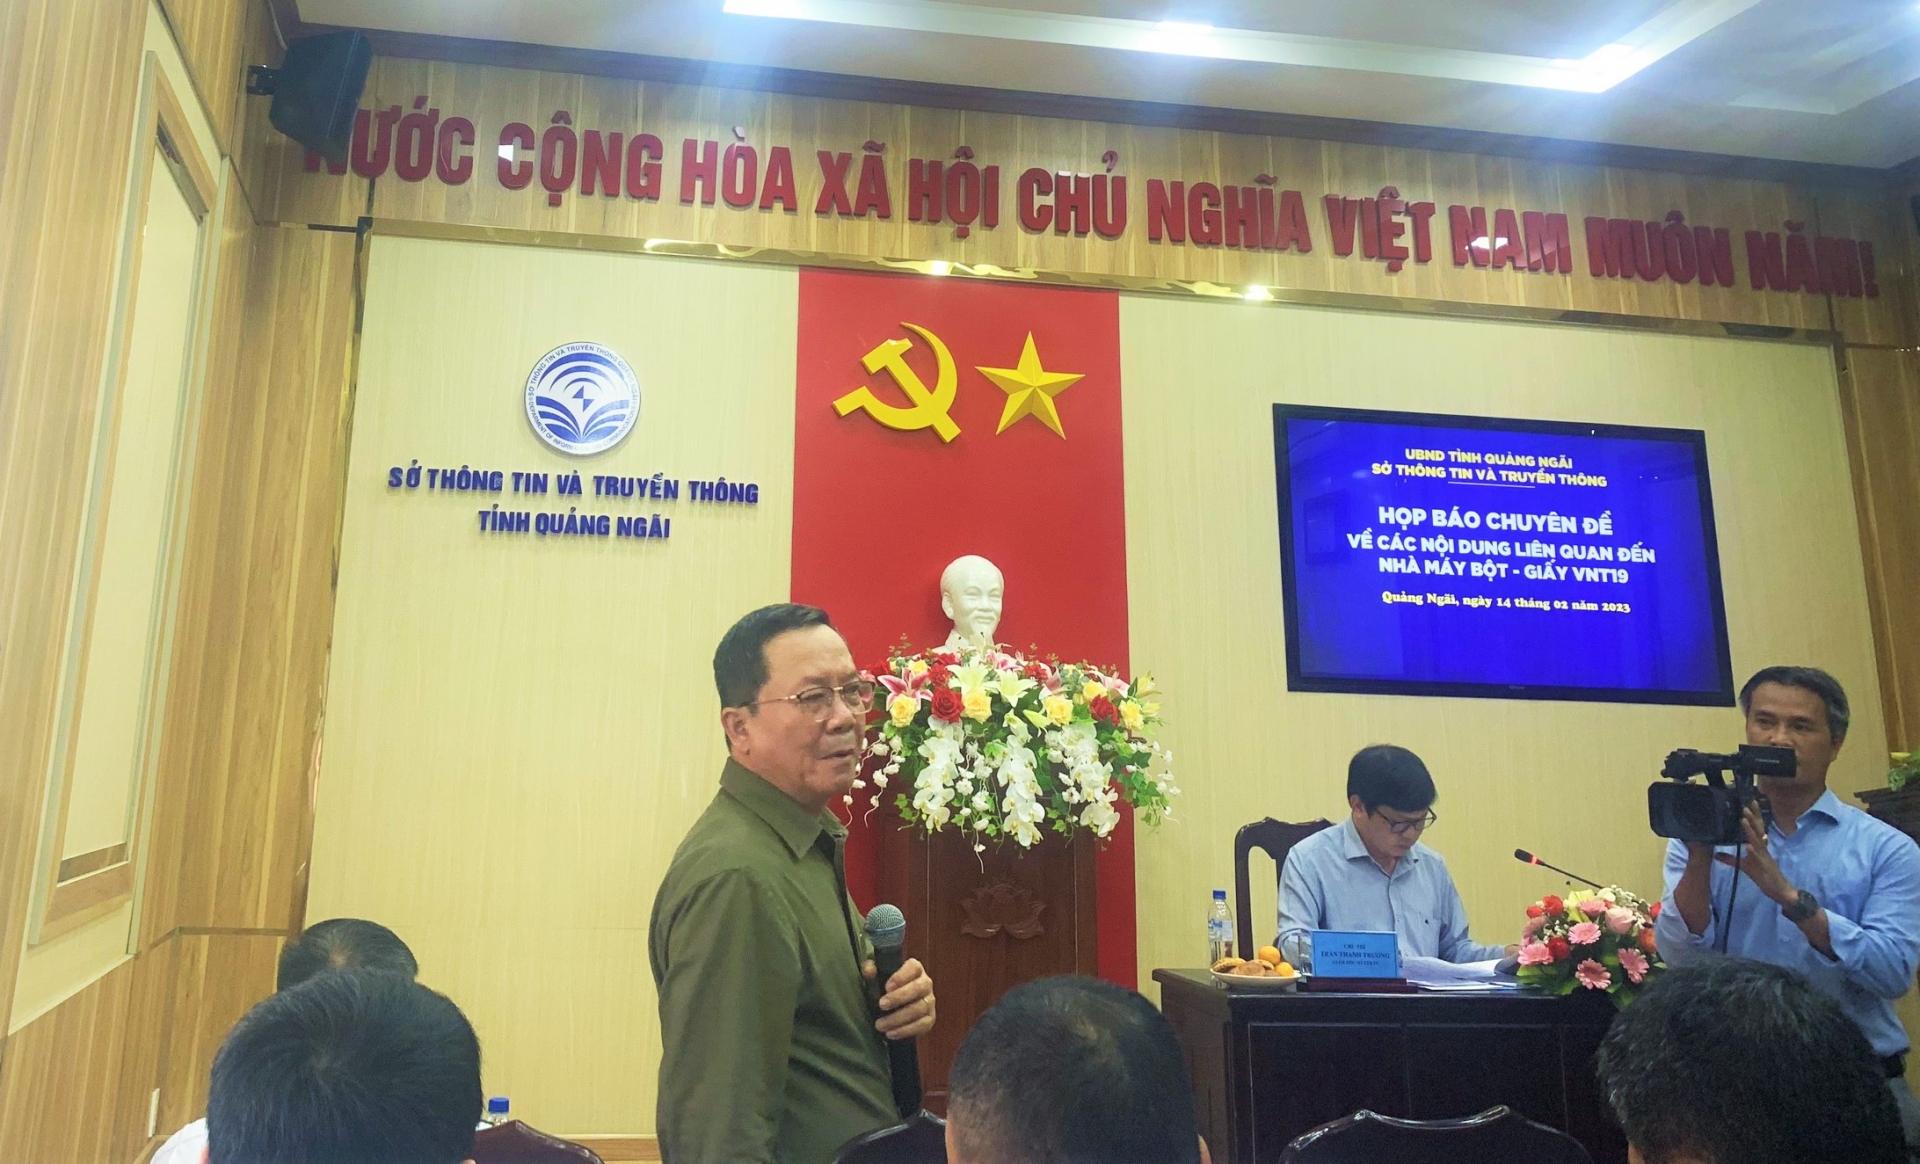 Ông Nguyễn Quốc Tân - Phó Giám đốc Sở Tài nguyên và Môi trường tỉnh Quảng Ngãi trả lời câu hỏi của các cơ quan Báo chí